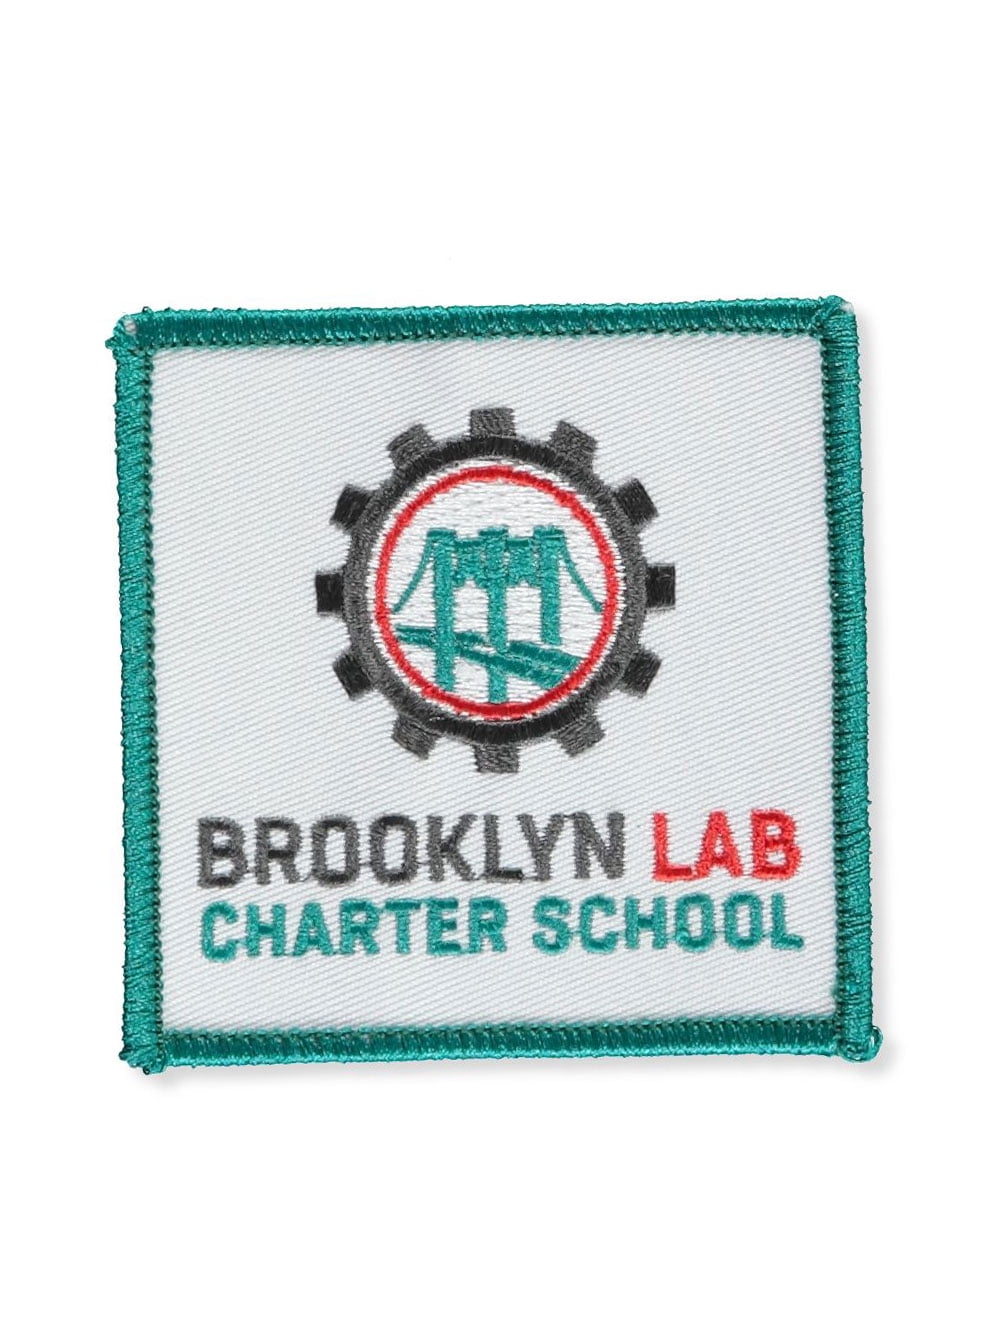 Brooklyn Lab Charter School Patch